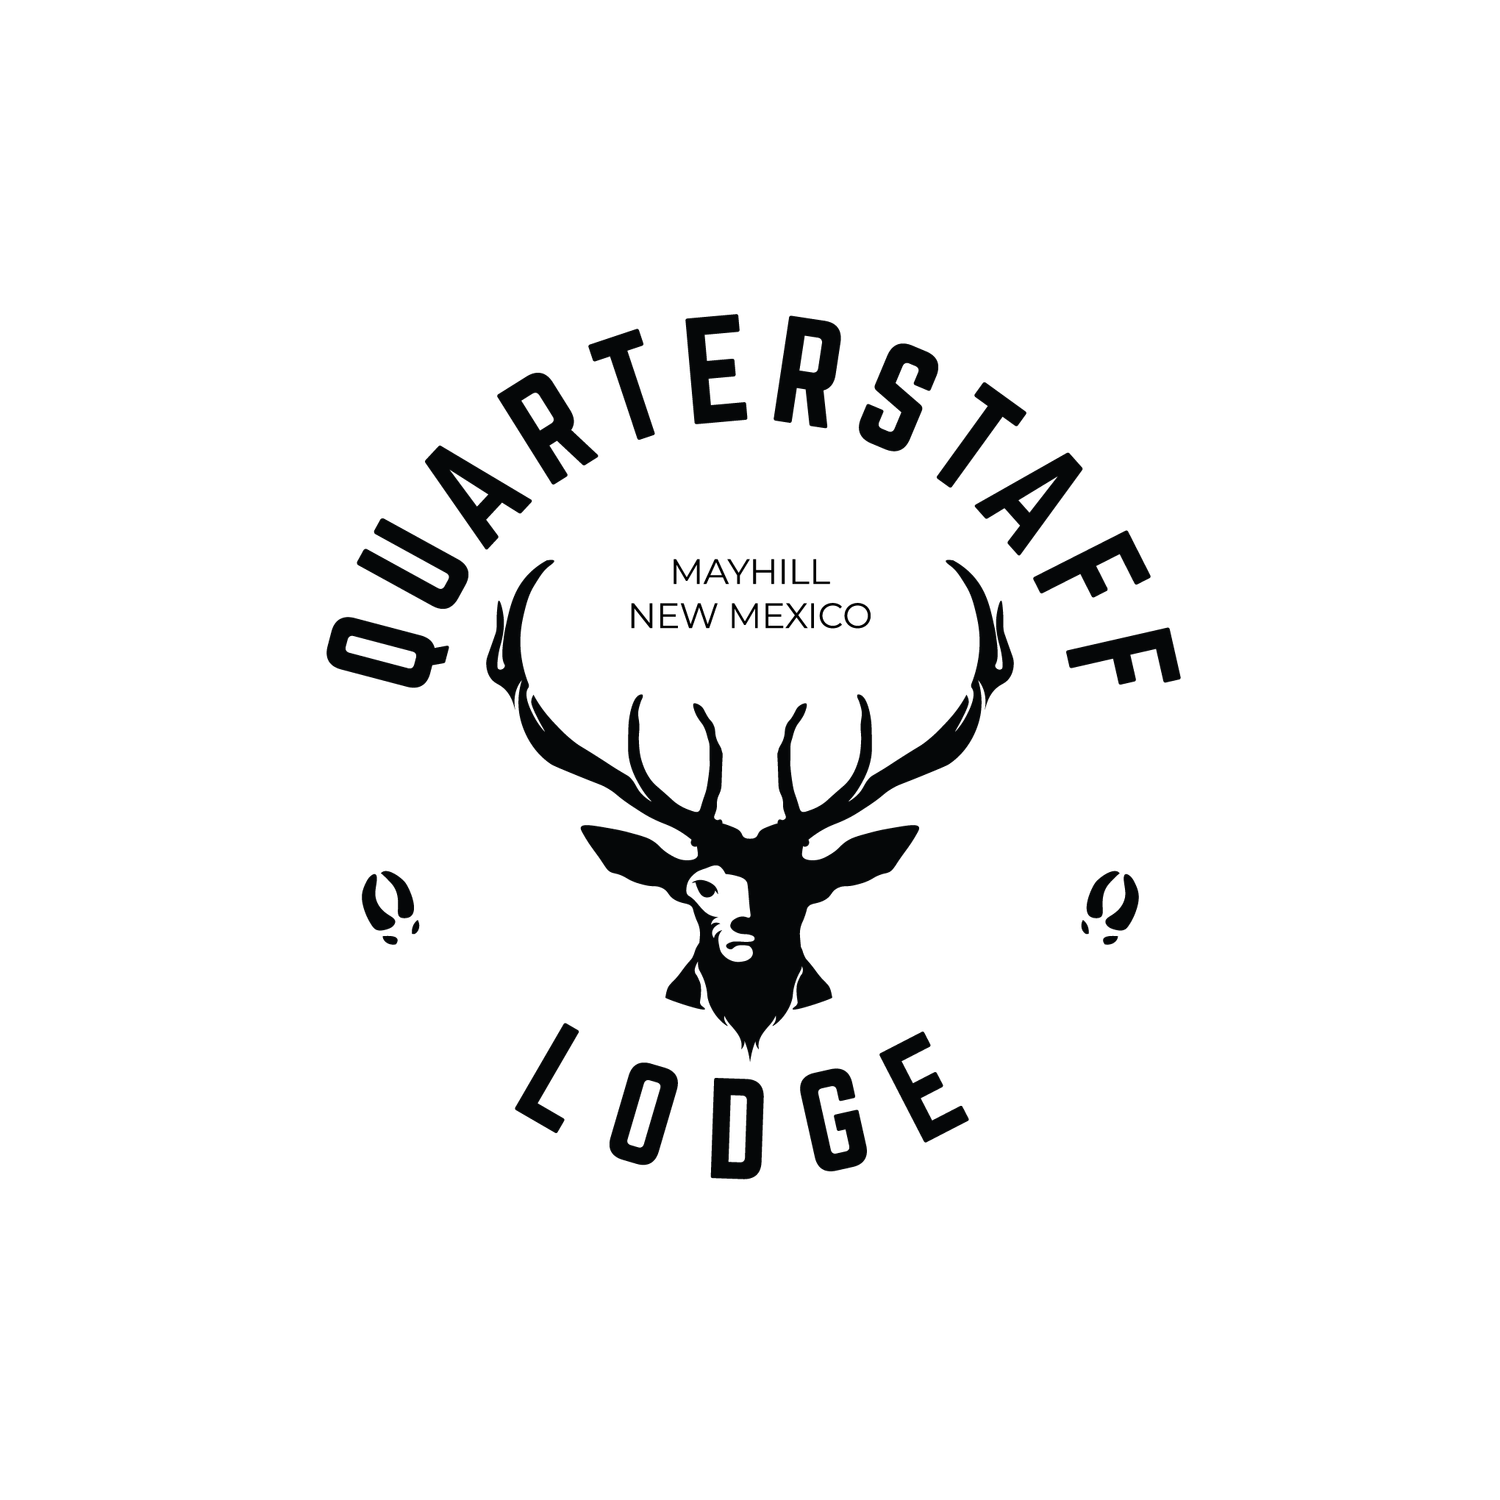 Quarterstaff Lodge